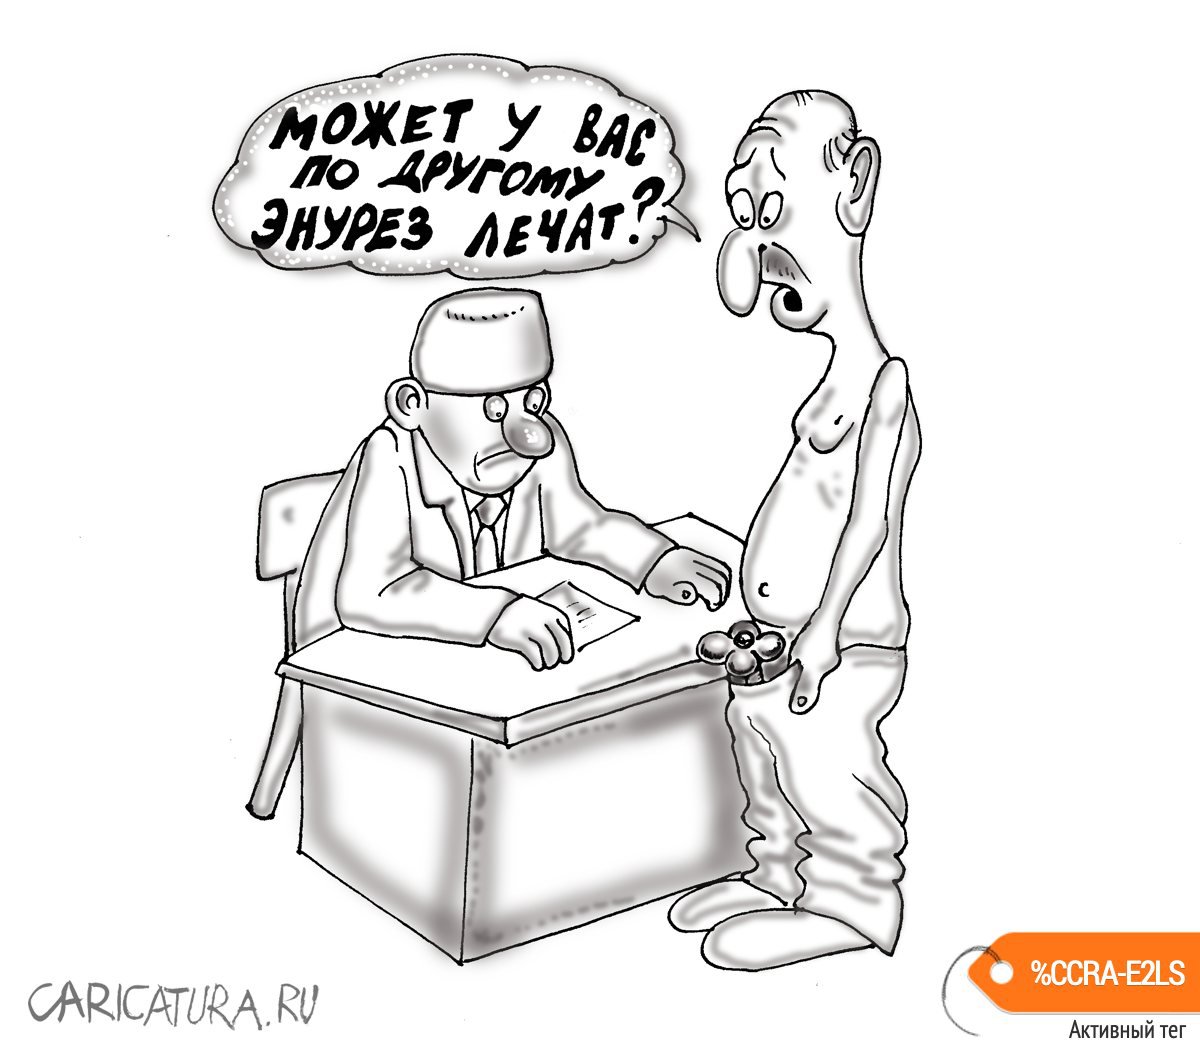 Карикатура "Энурез", Булат Ирсаев